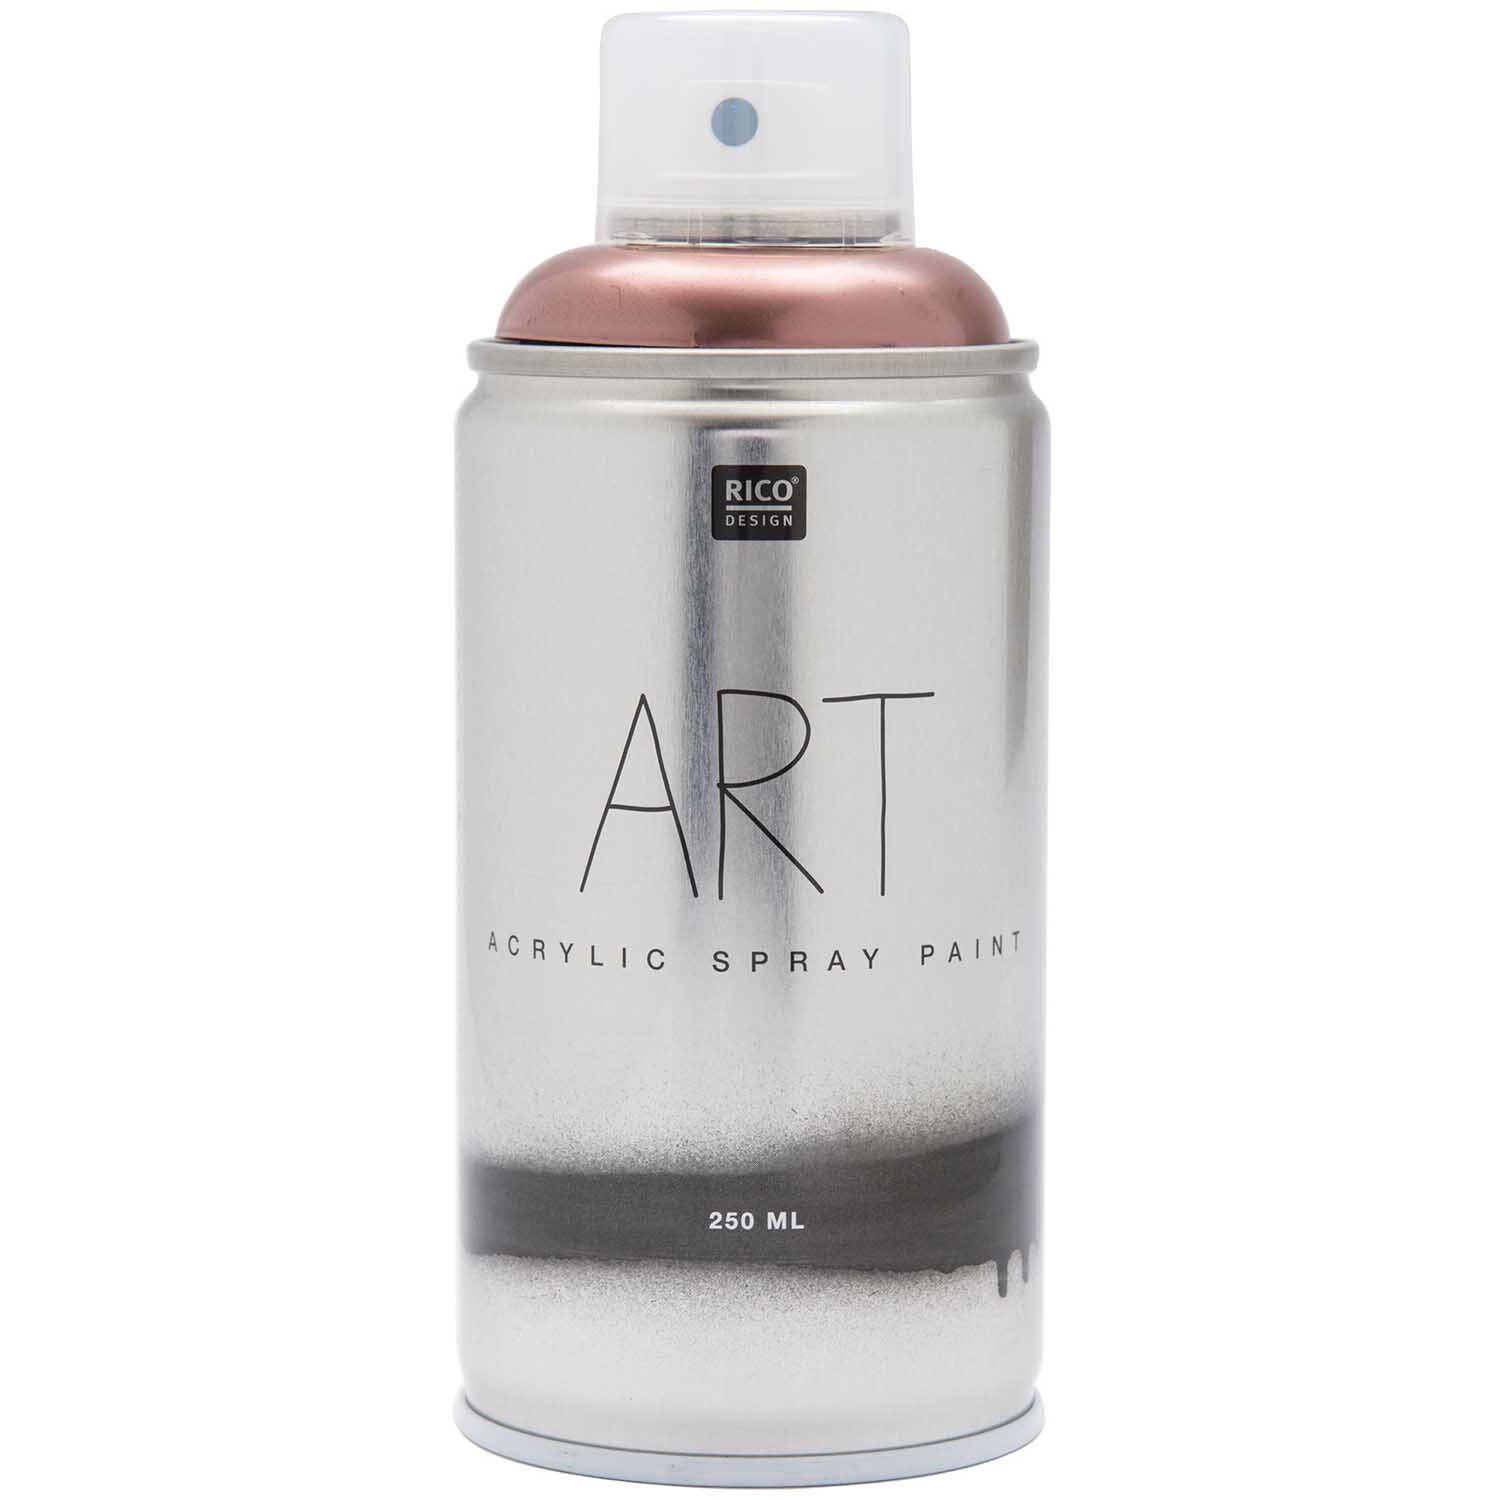 Art Acrylic Spray Paint roségold 250ml